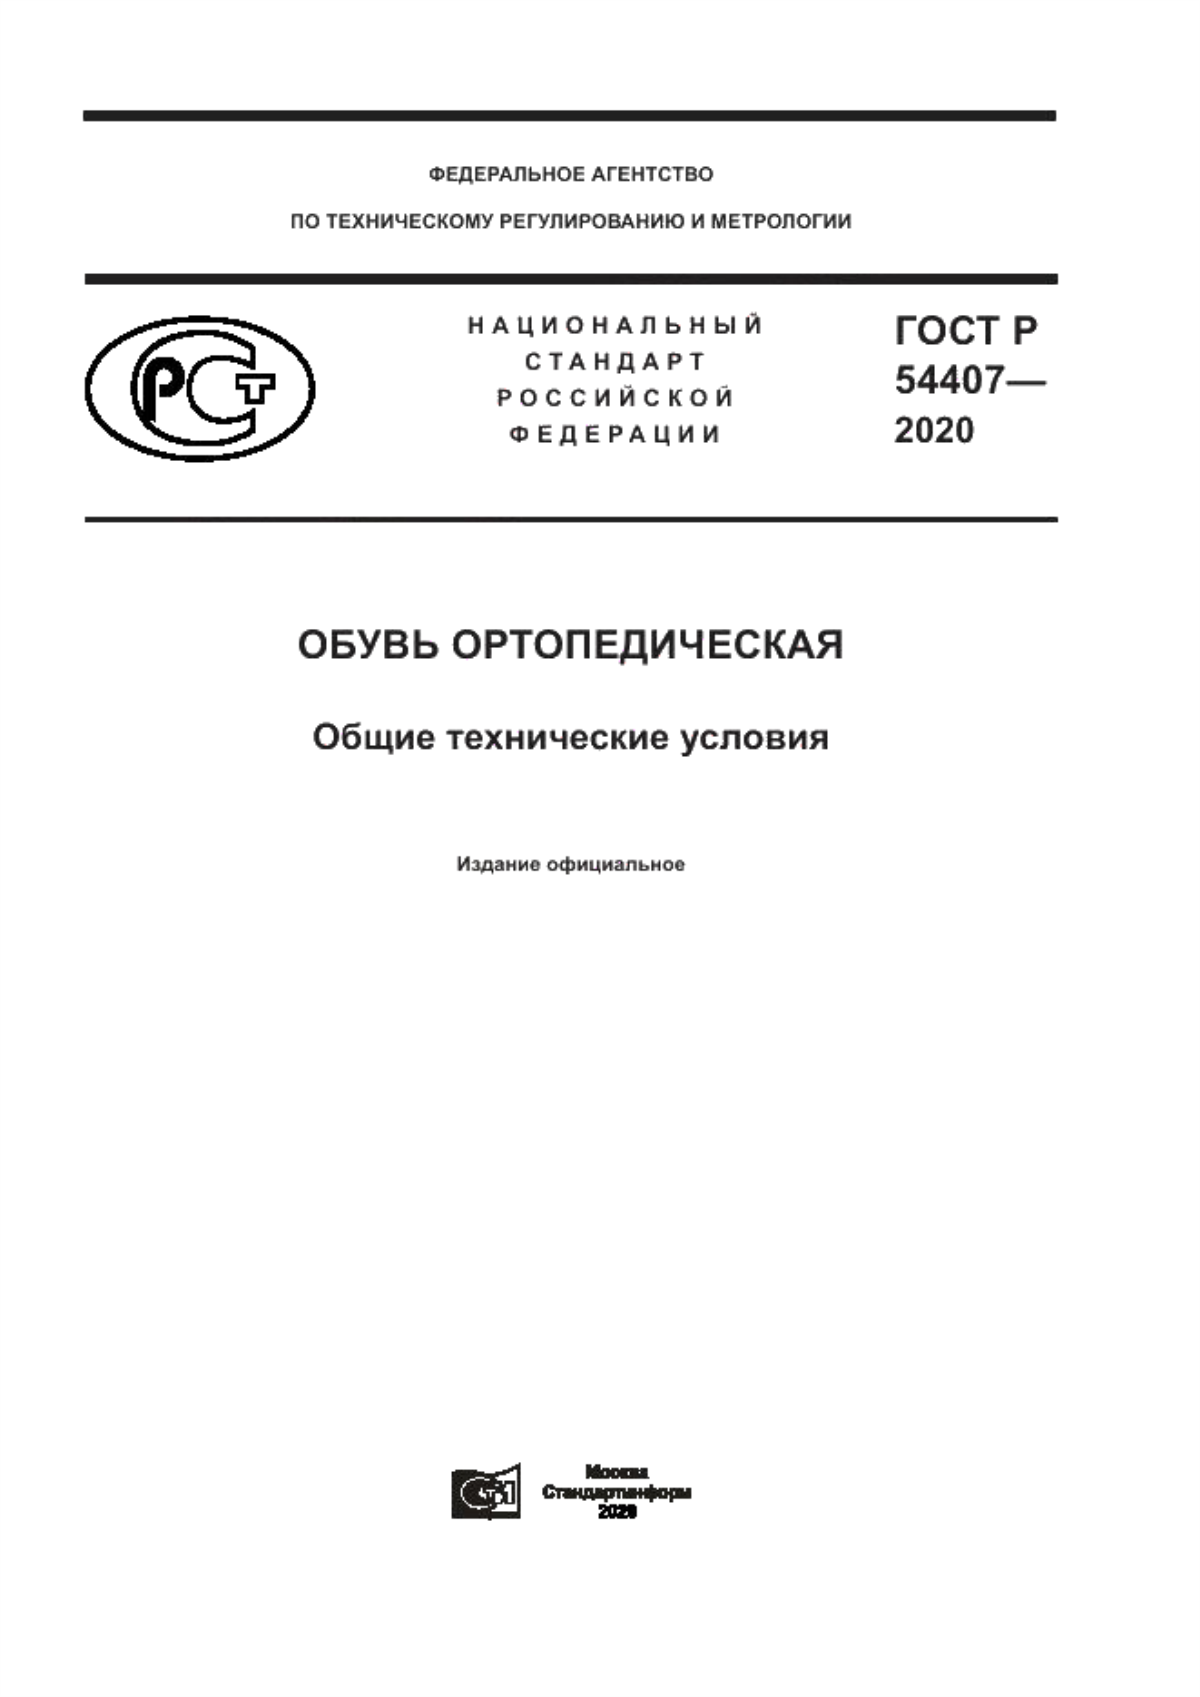 ГОСТ Р 54407-2020 Обувь ортопедическая. Общие технические условия